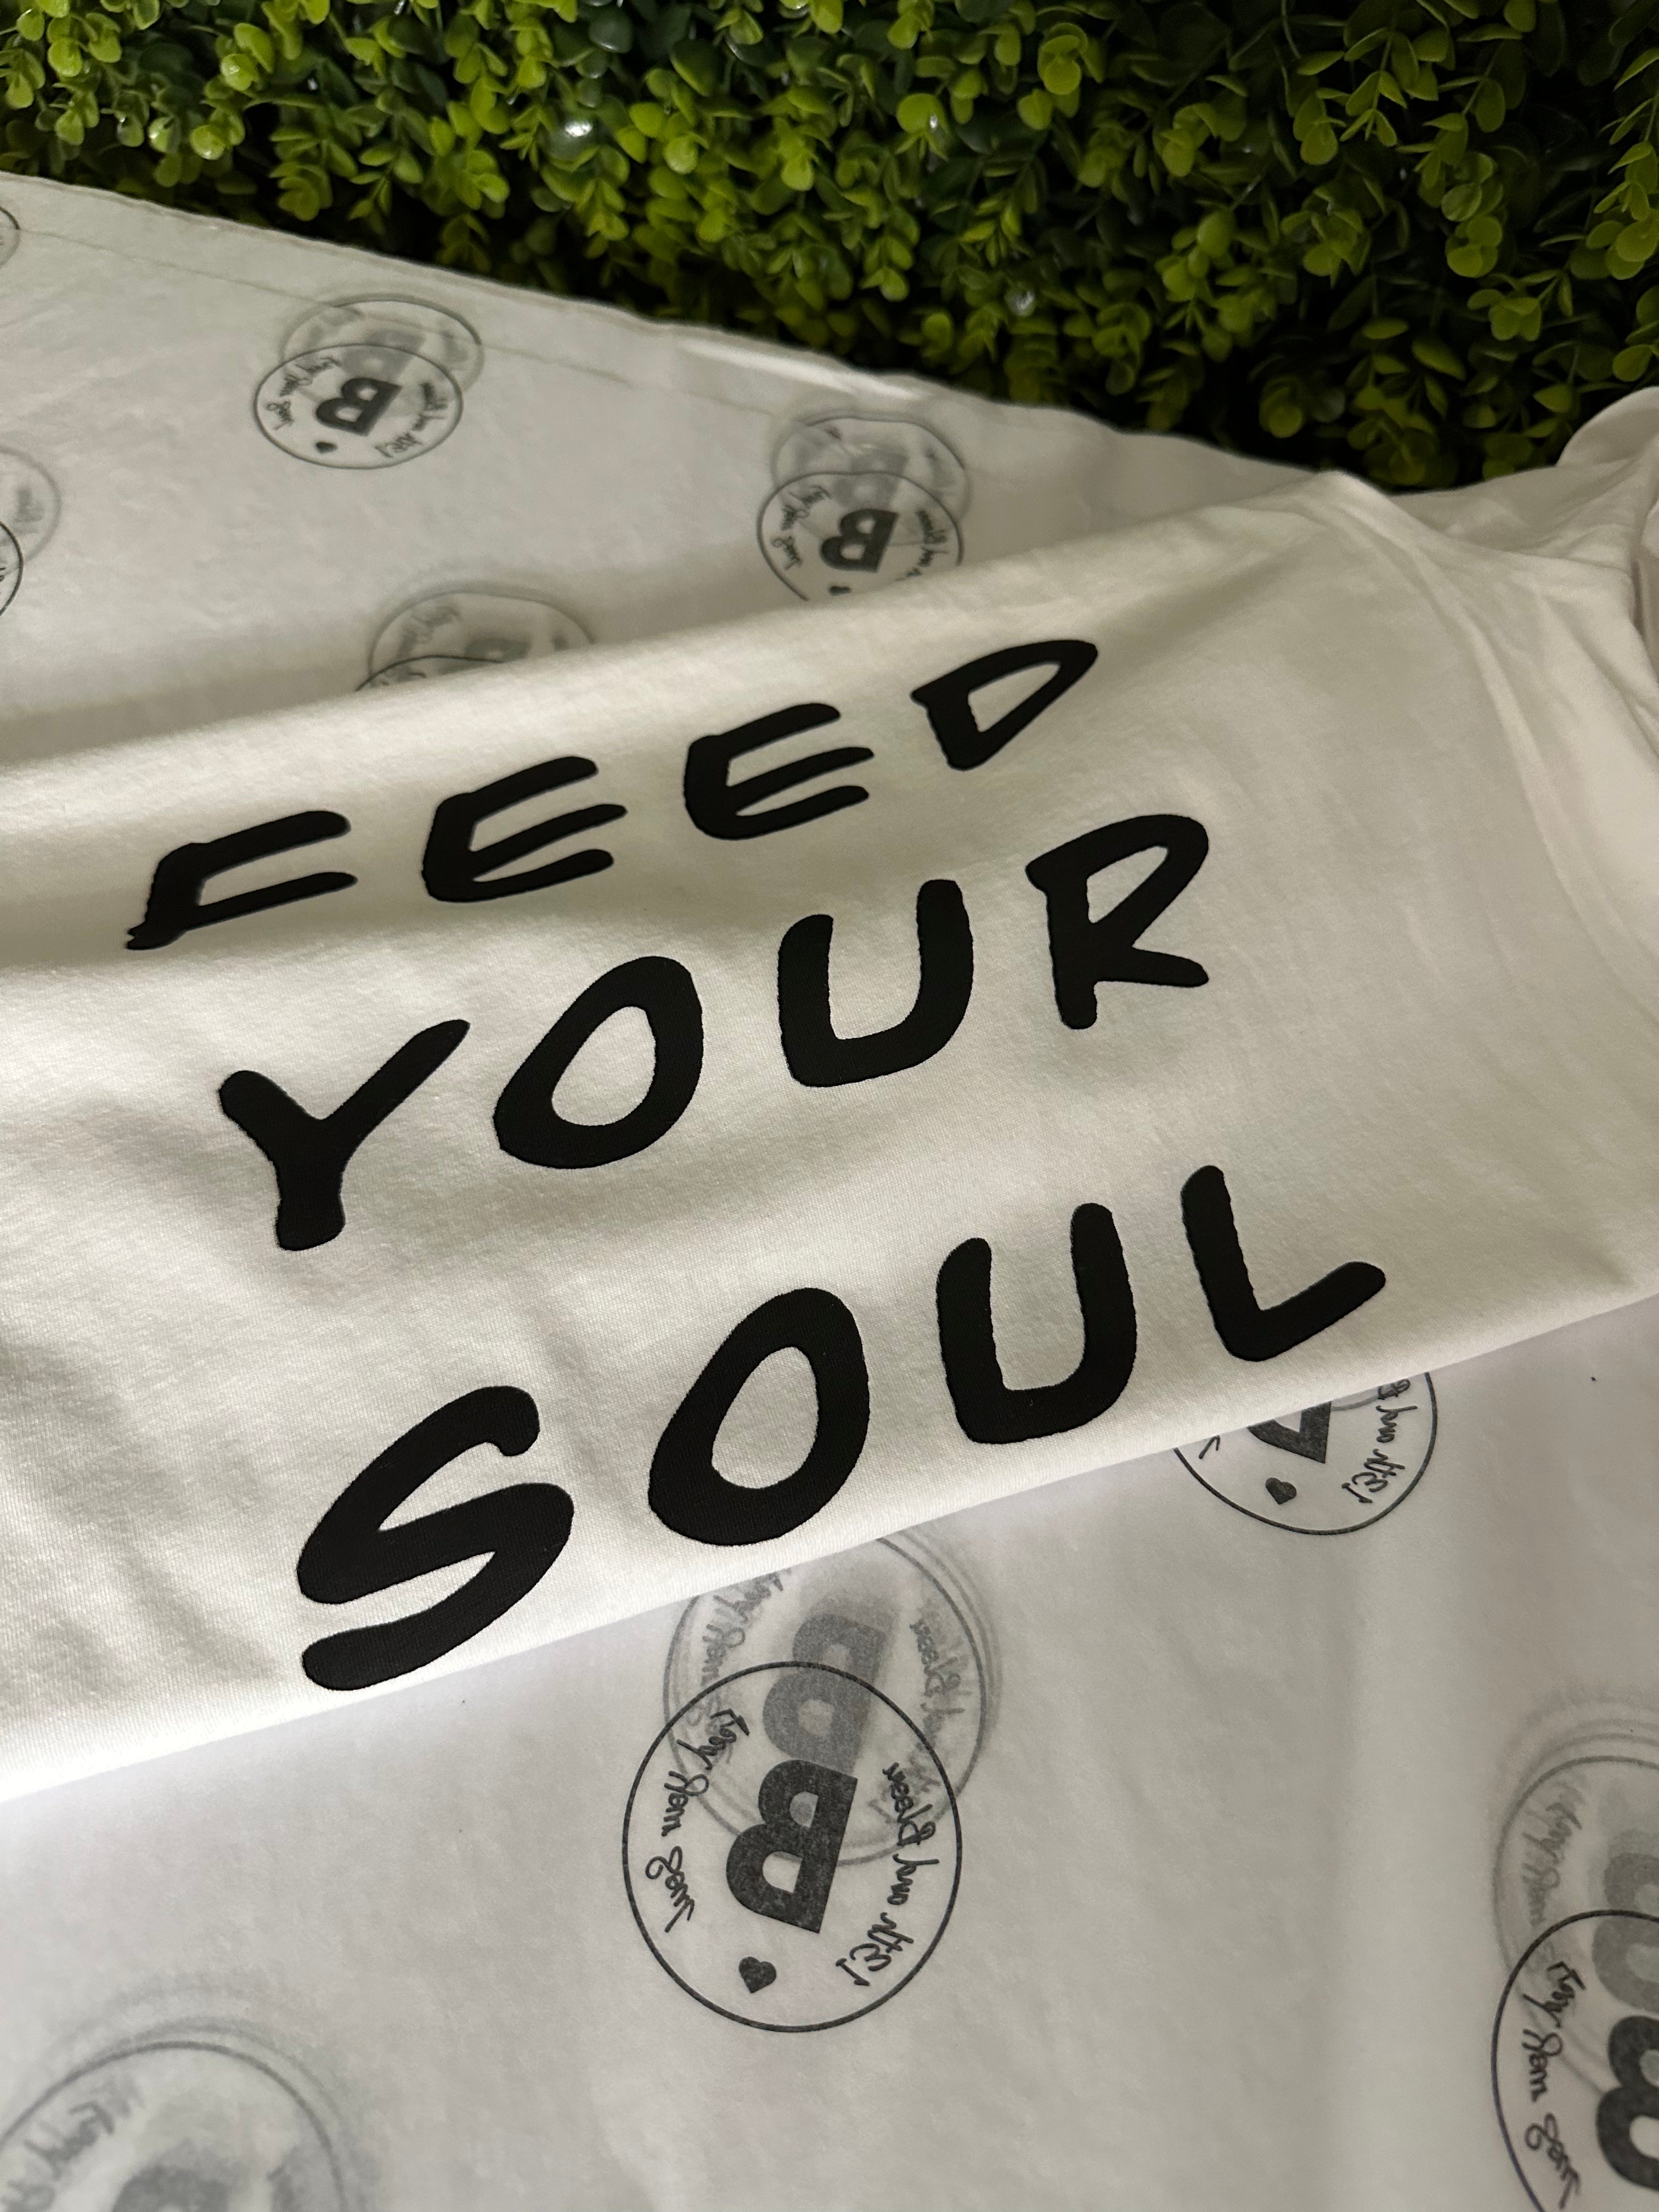 White Tee: Feed Your Soul Staple - Short Sleeved in white w/ black logo